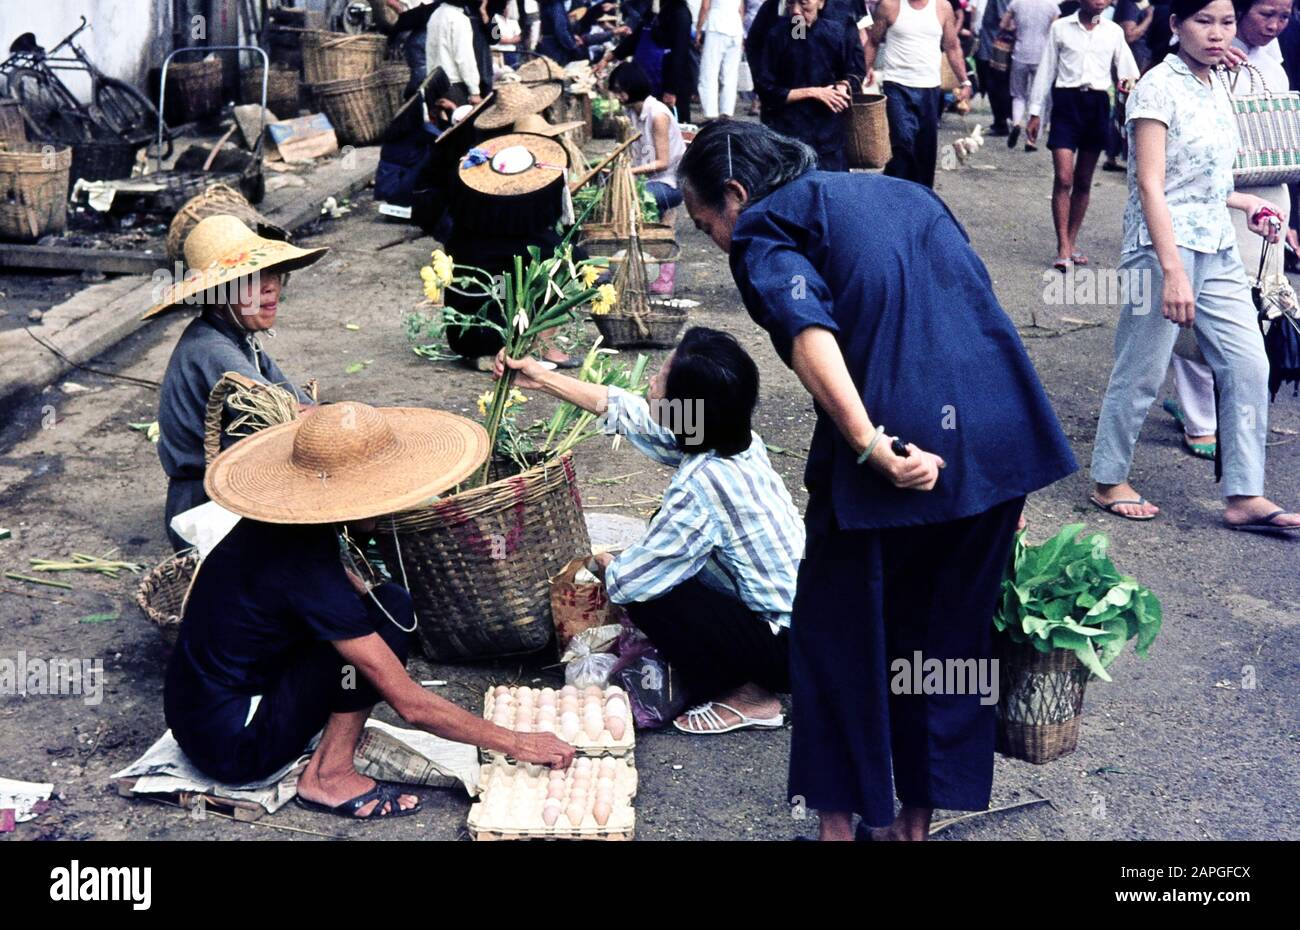 Blumenverkäuferin Auf Dem Tai Po Market, Hongkong Juli 1968. Venditore Di Fiori Al Mercato Tai Po, Hong Kong Luglio 1968. Foto Stock